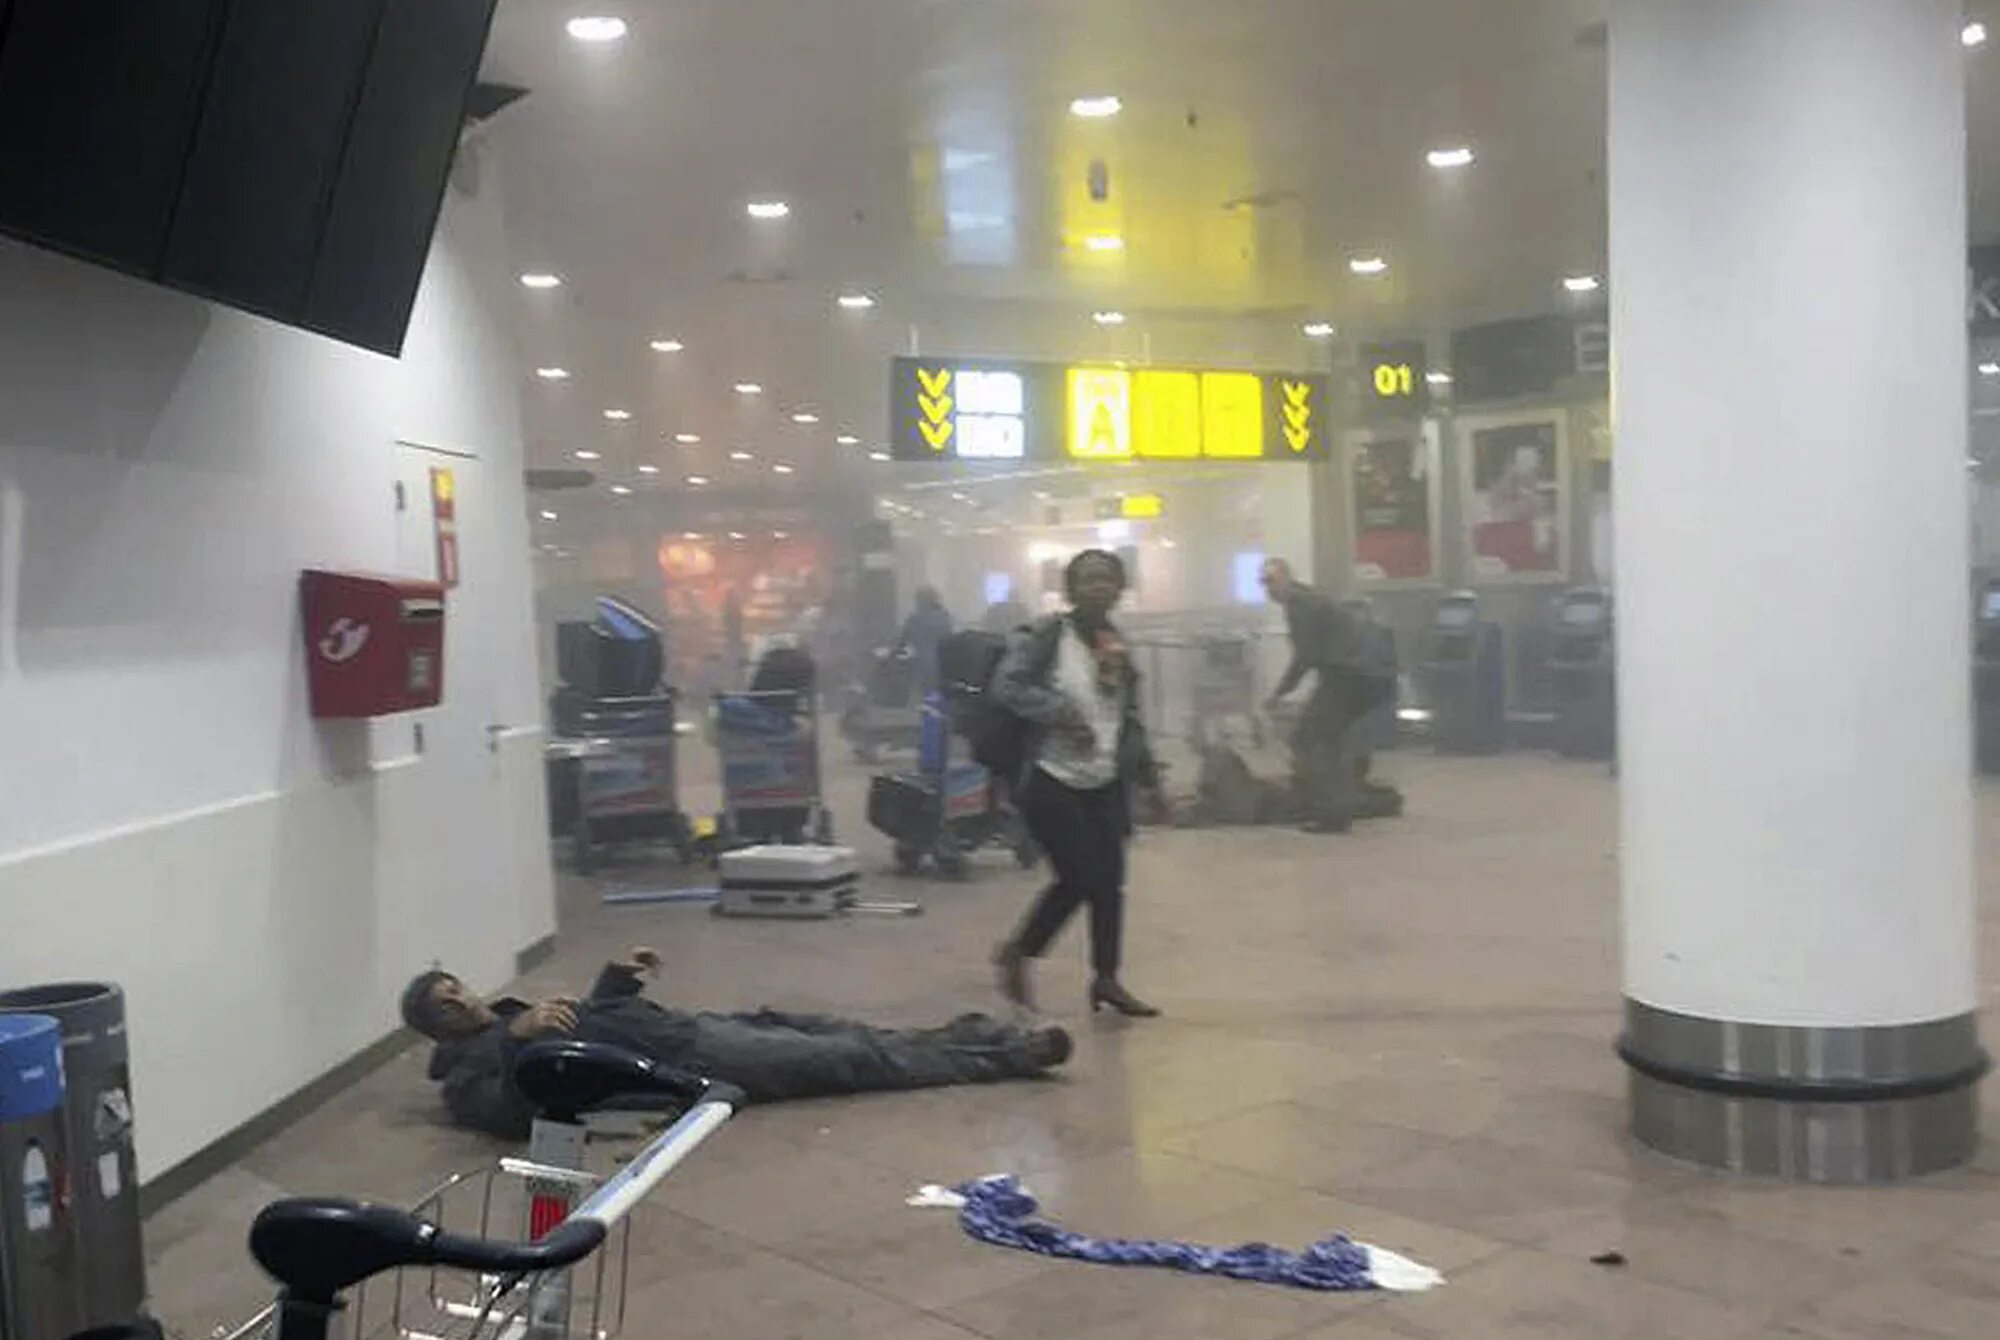 Борьба с терроризмом в аэропортах. Ограбление в аэропорту в Брюсселе. Теракт в Брюсселе в школе.